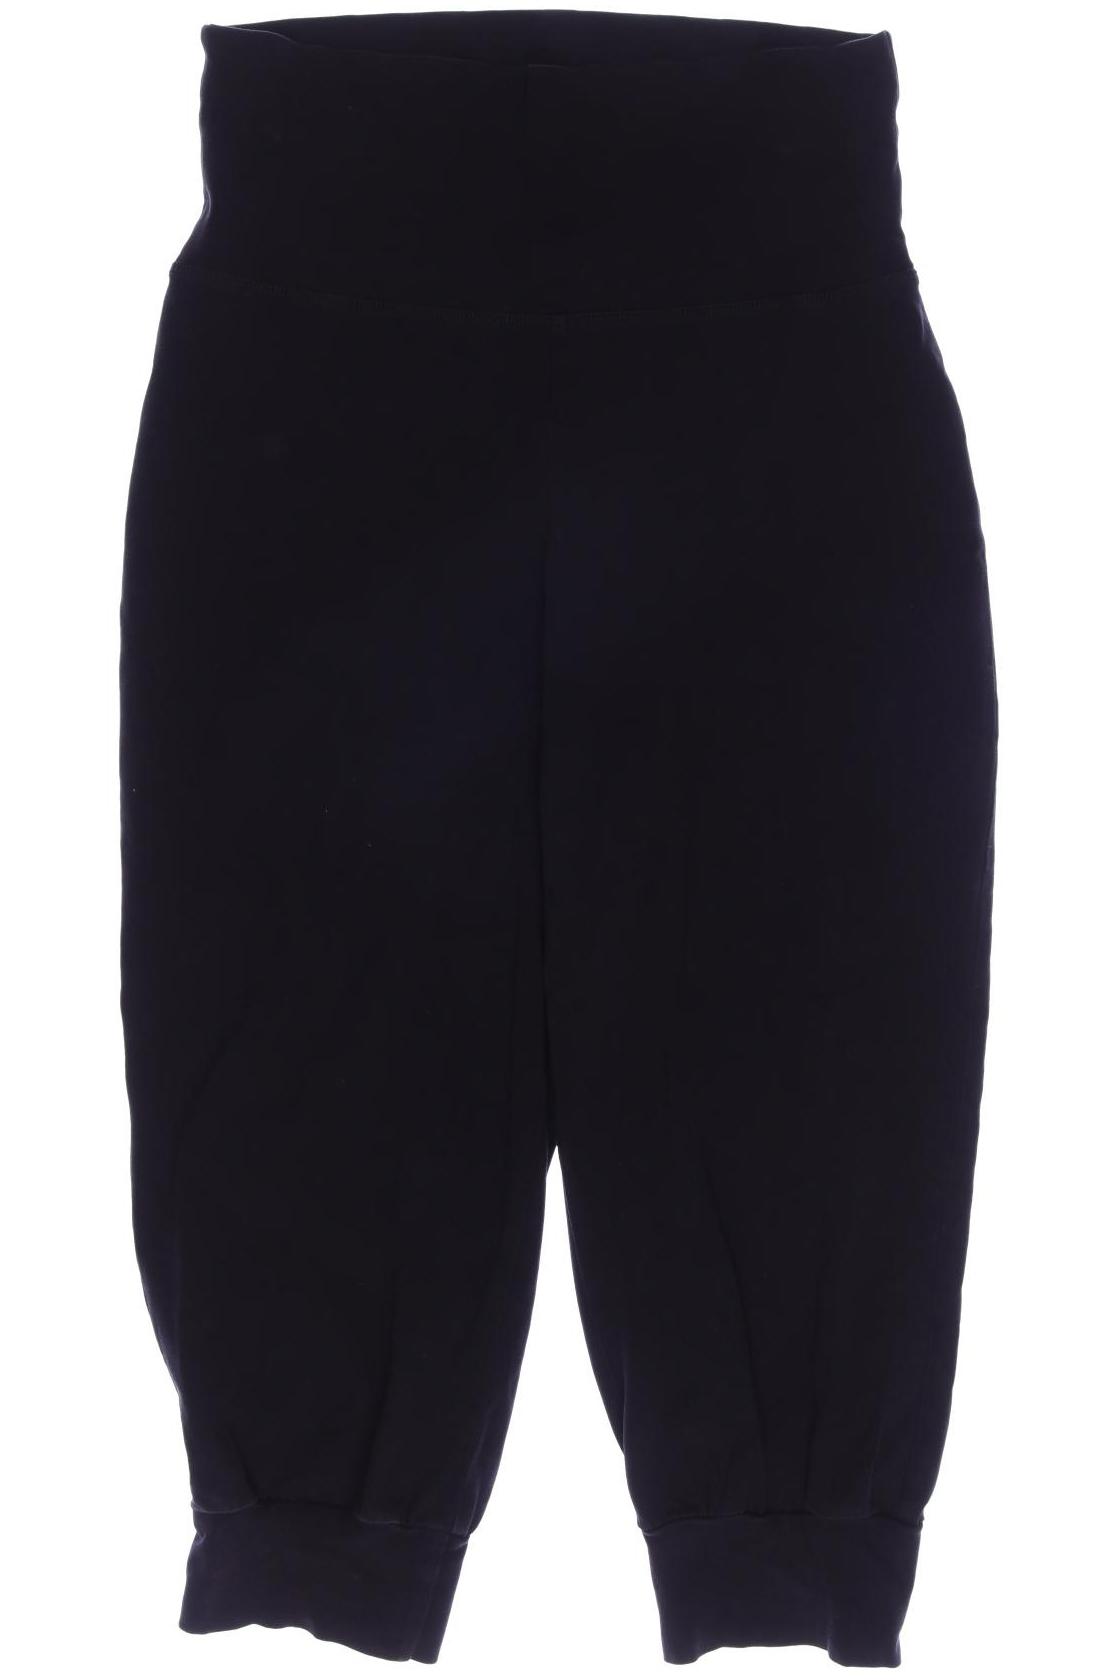 Qiero Damen Shorts, schwarz, Gr. 36 von Qiero